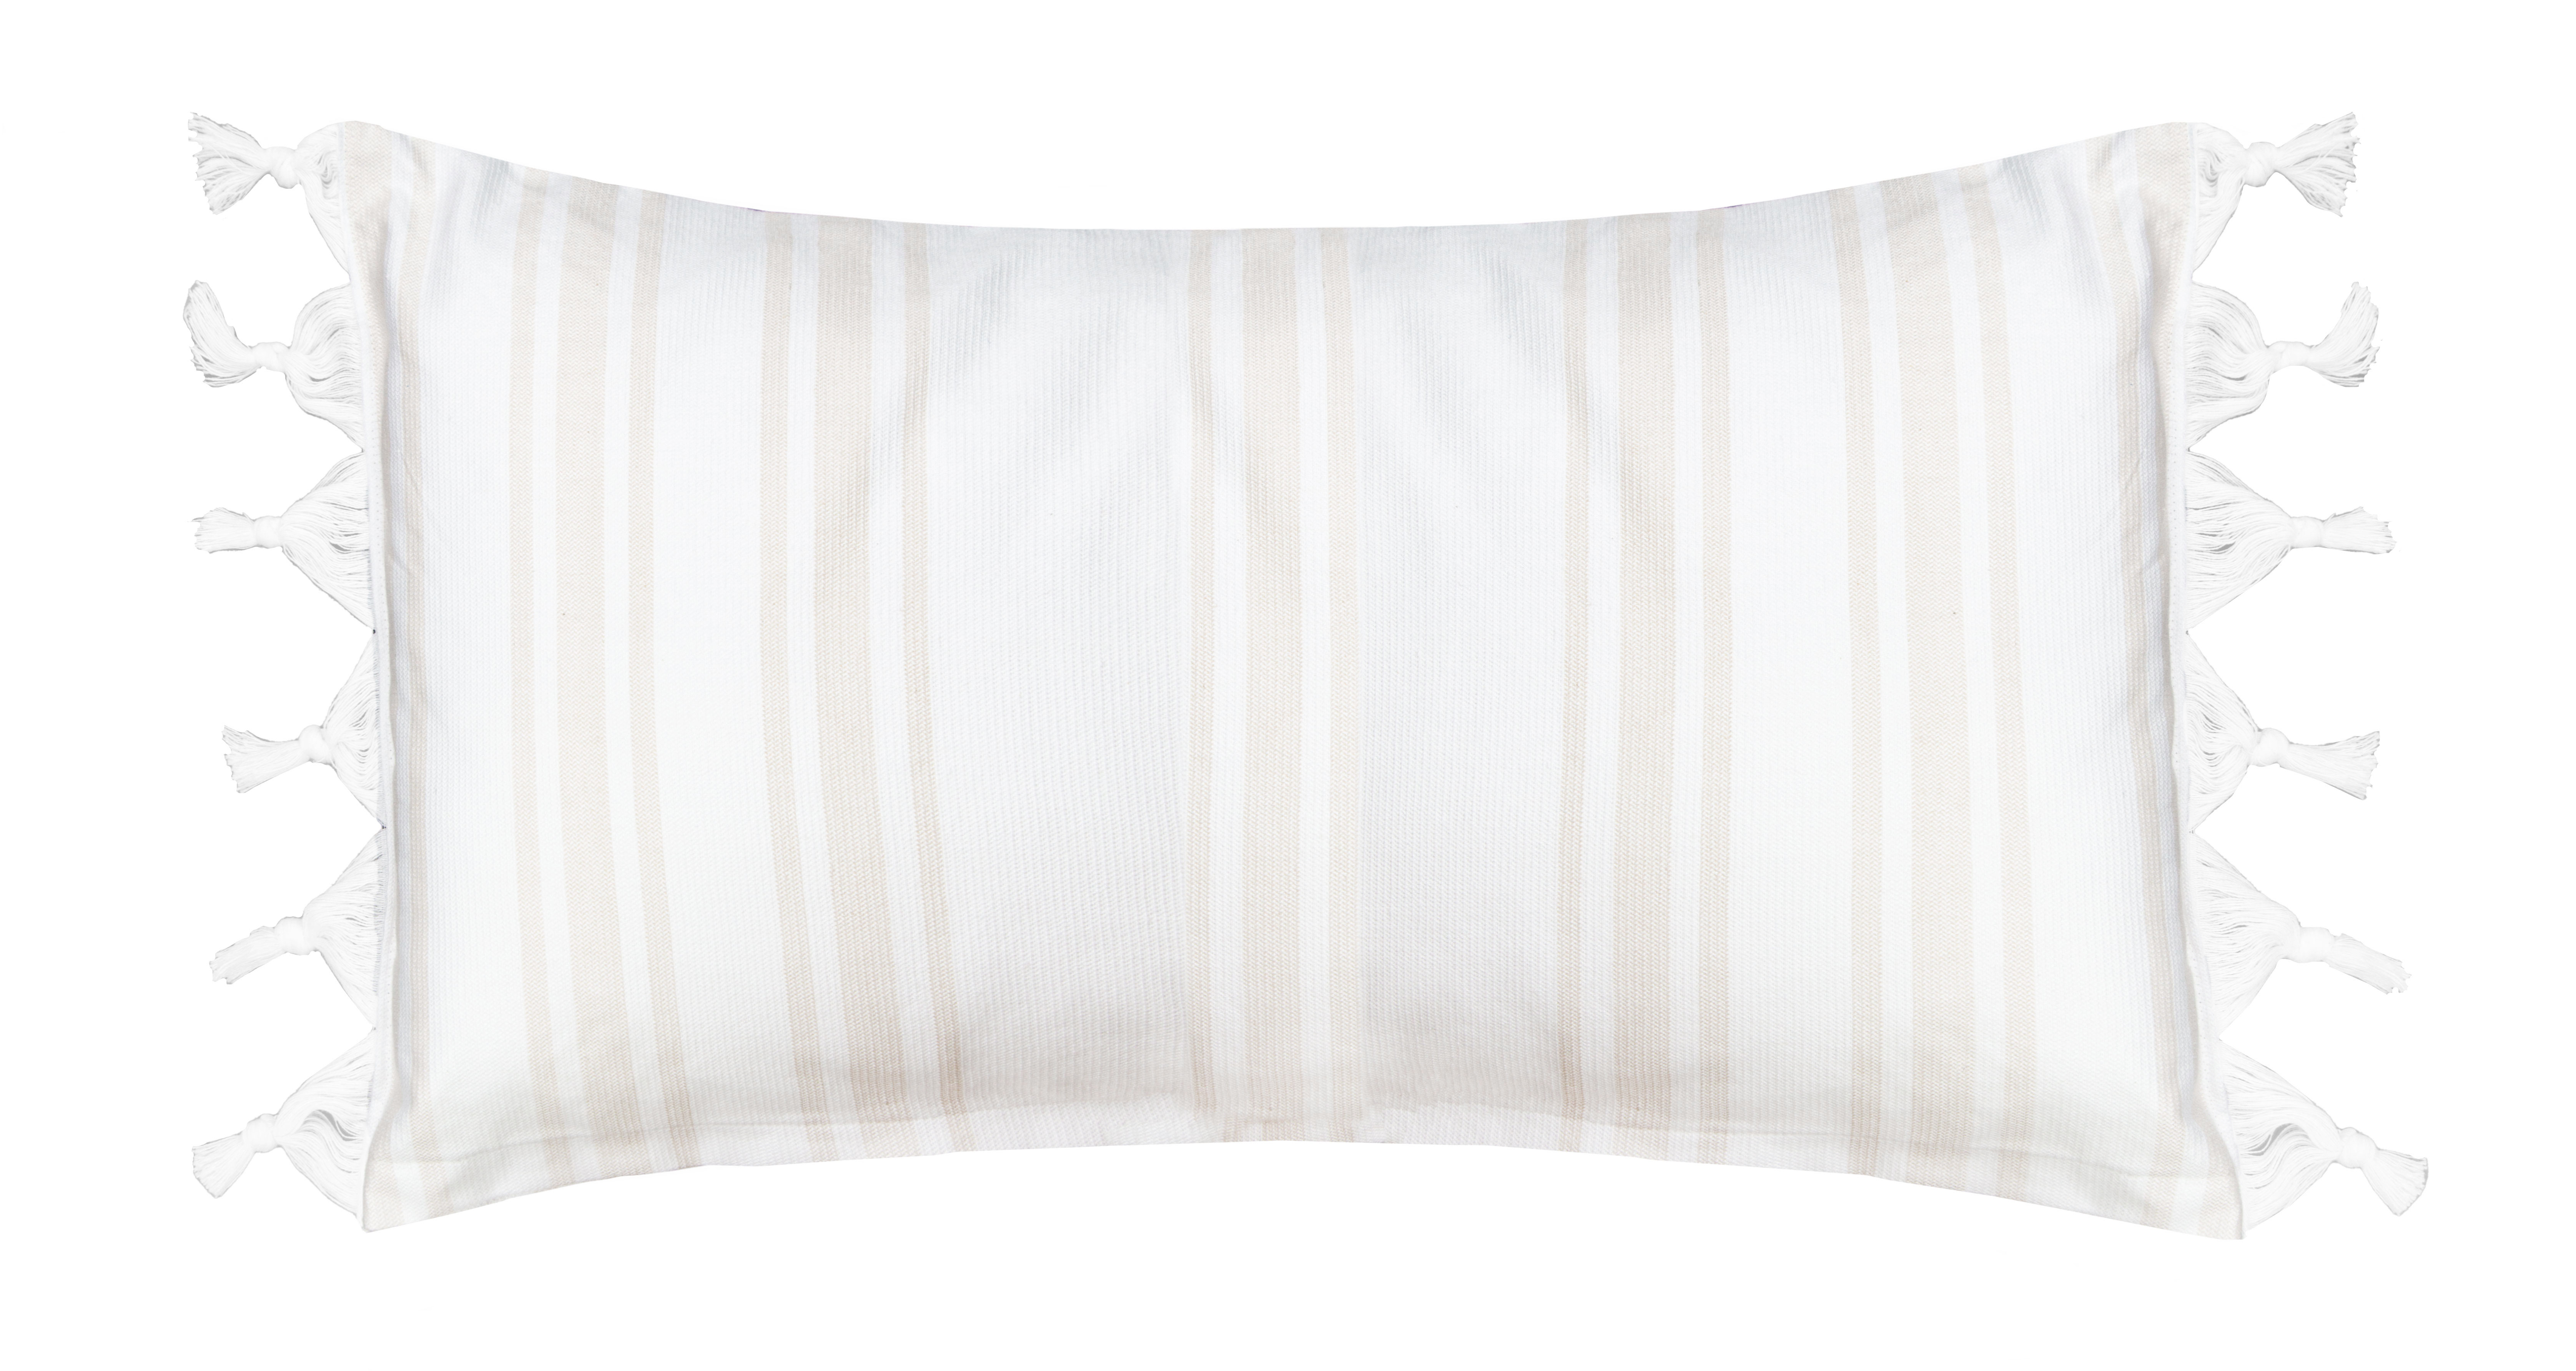 Boho Kissenbezug mit Fransen, 100% Baumwolle, beige-weiß-gestreift, 40x60 cm